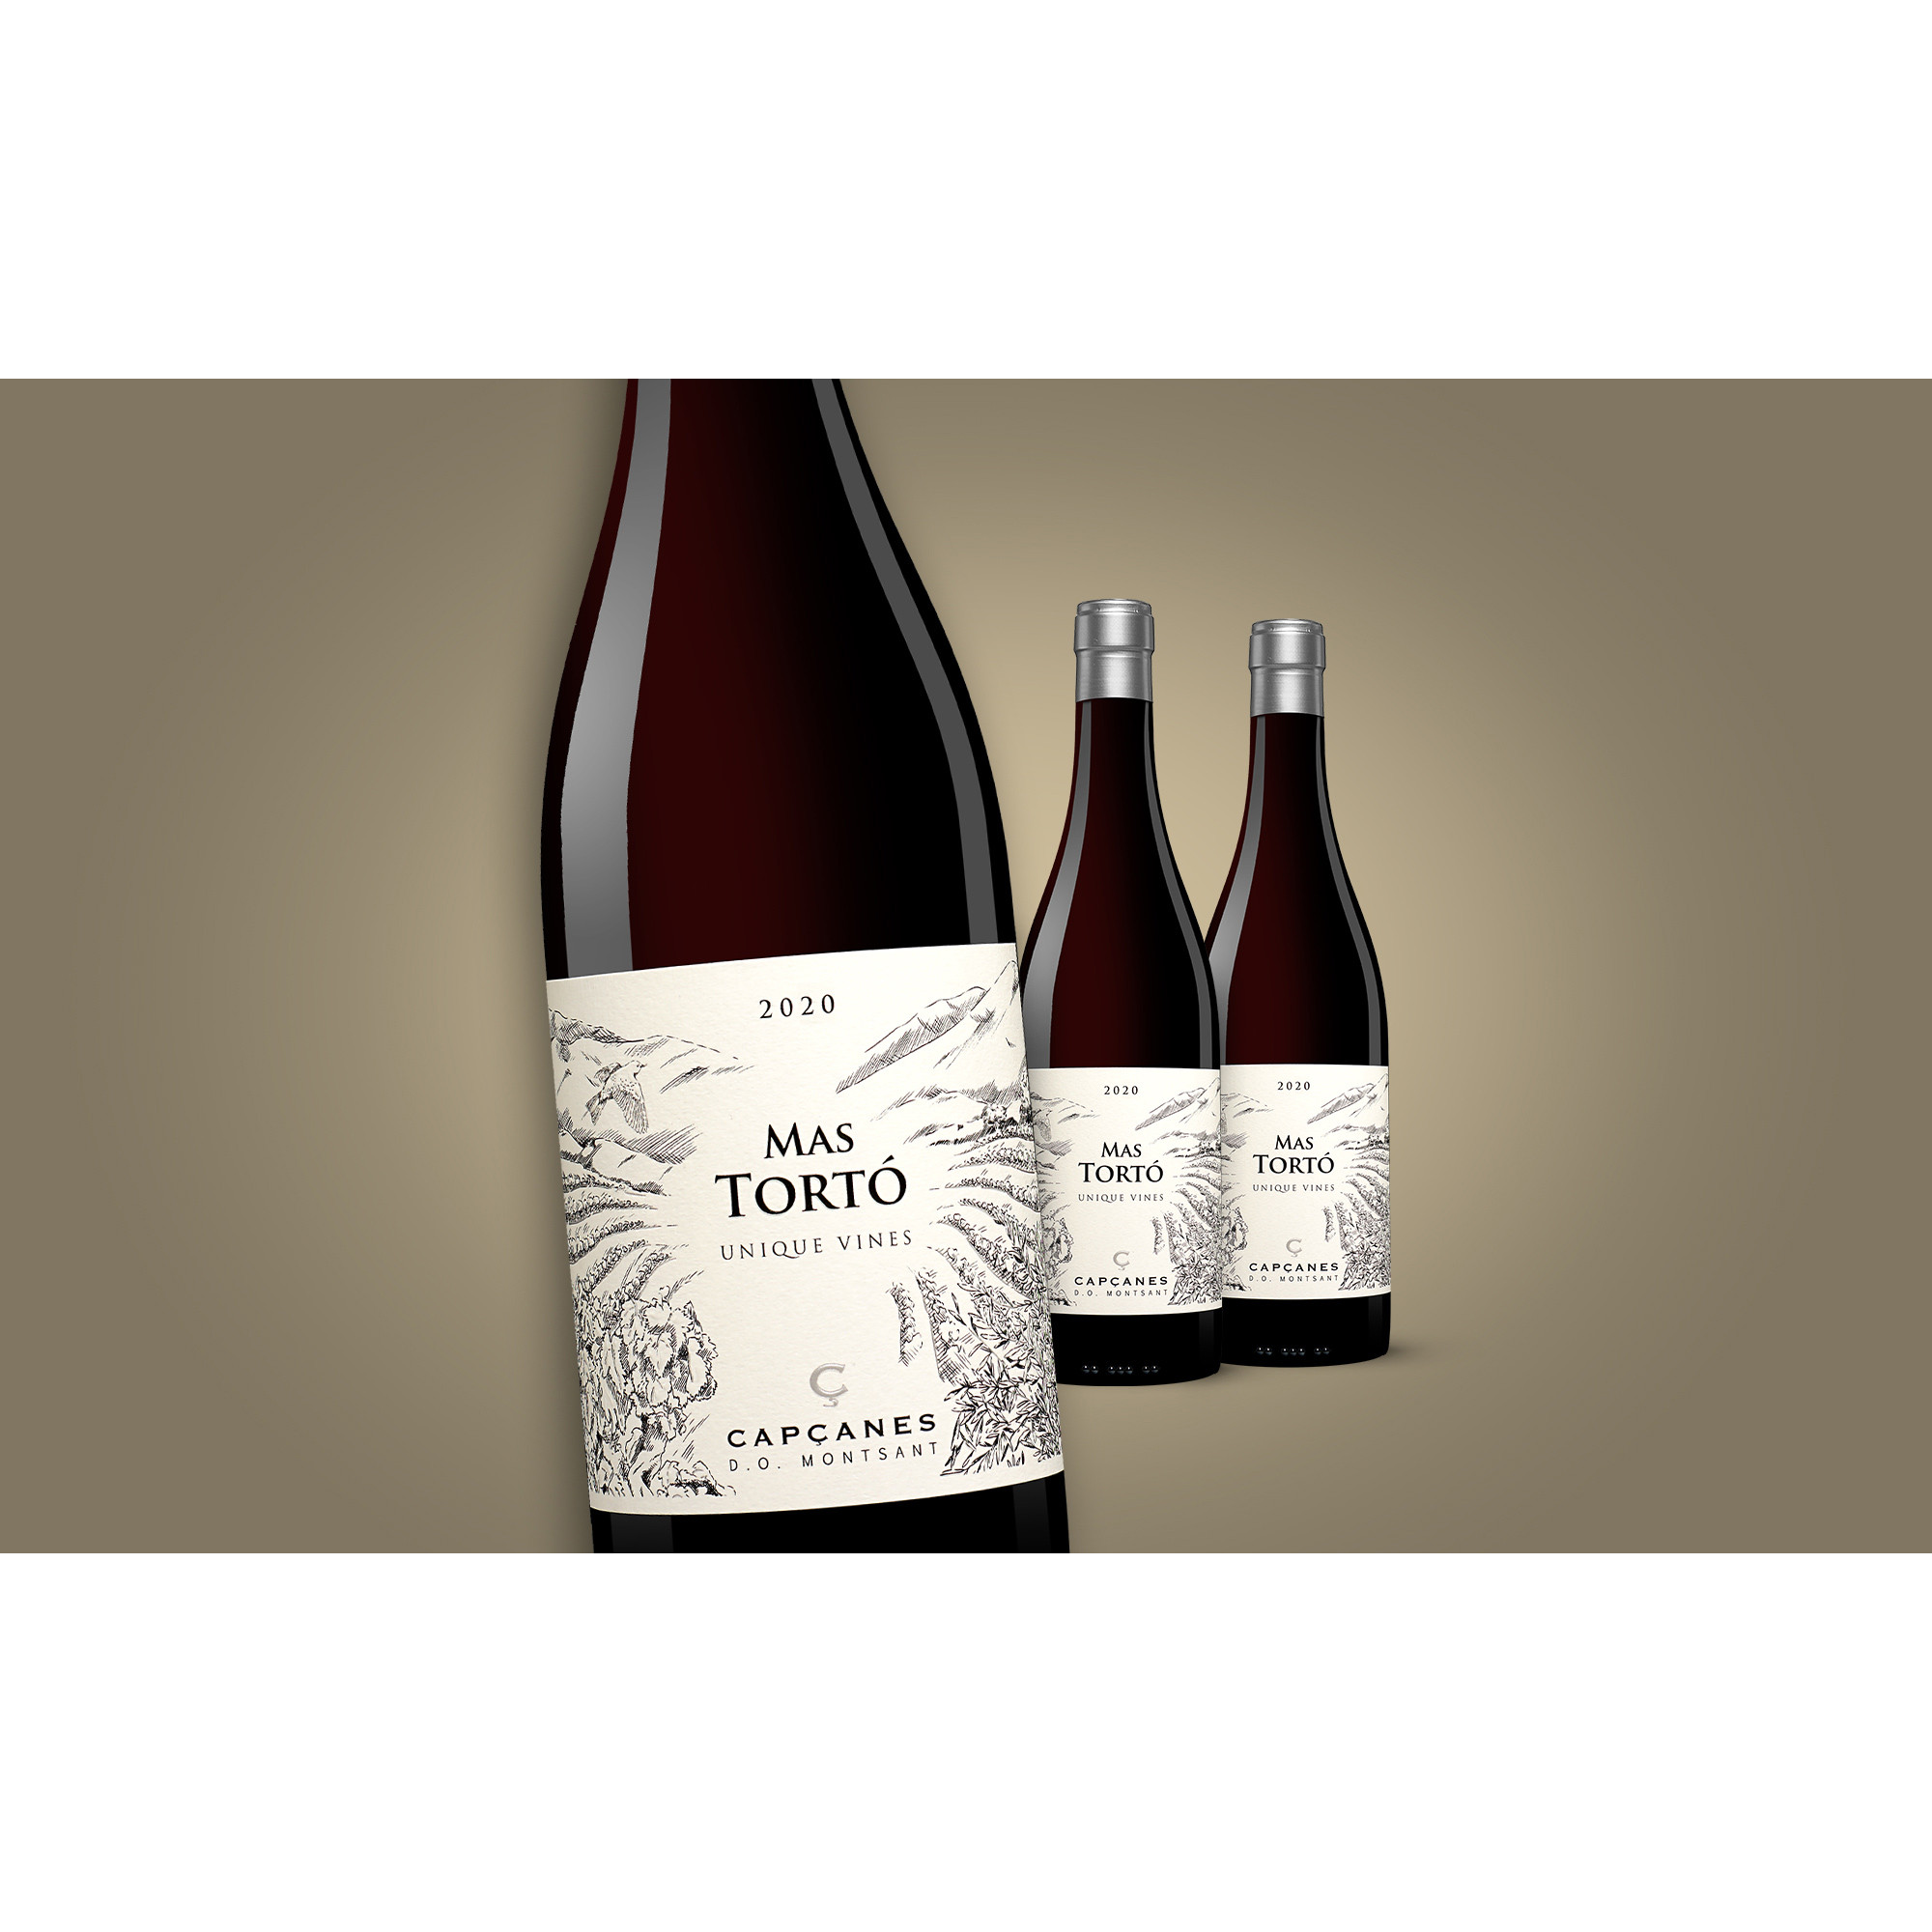 Capçanes »Mas Tortó« Unique Vines 2020  2.25L 15% Vol. Weinpaket aus Spanien 36844 vinos DE